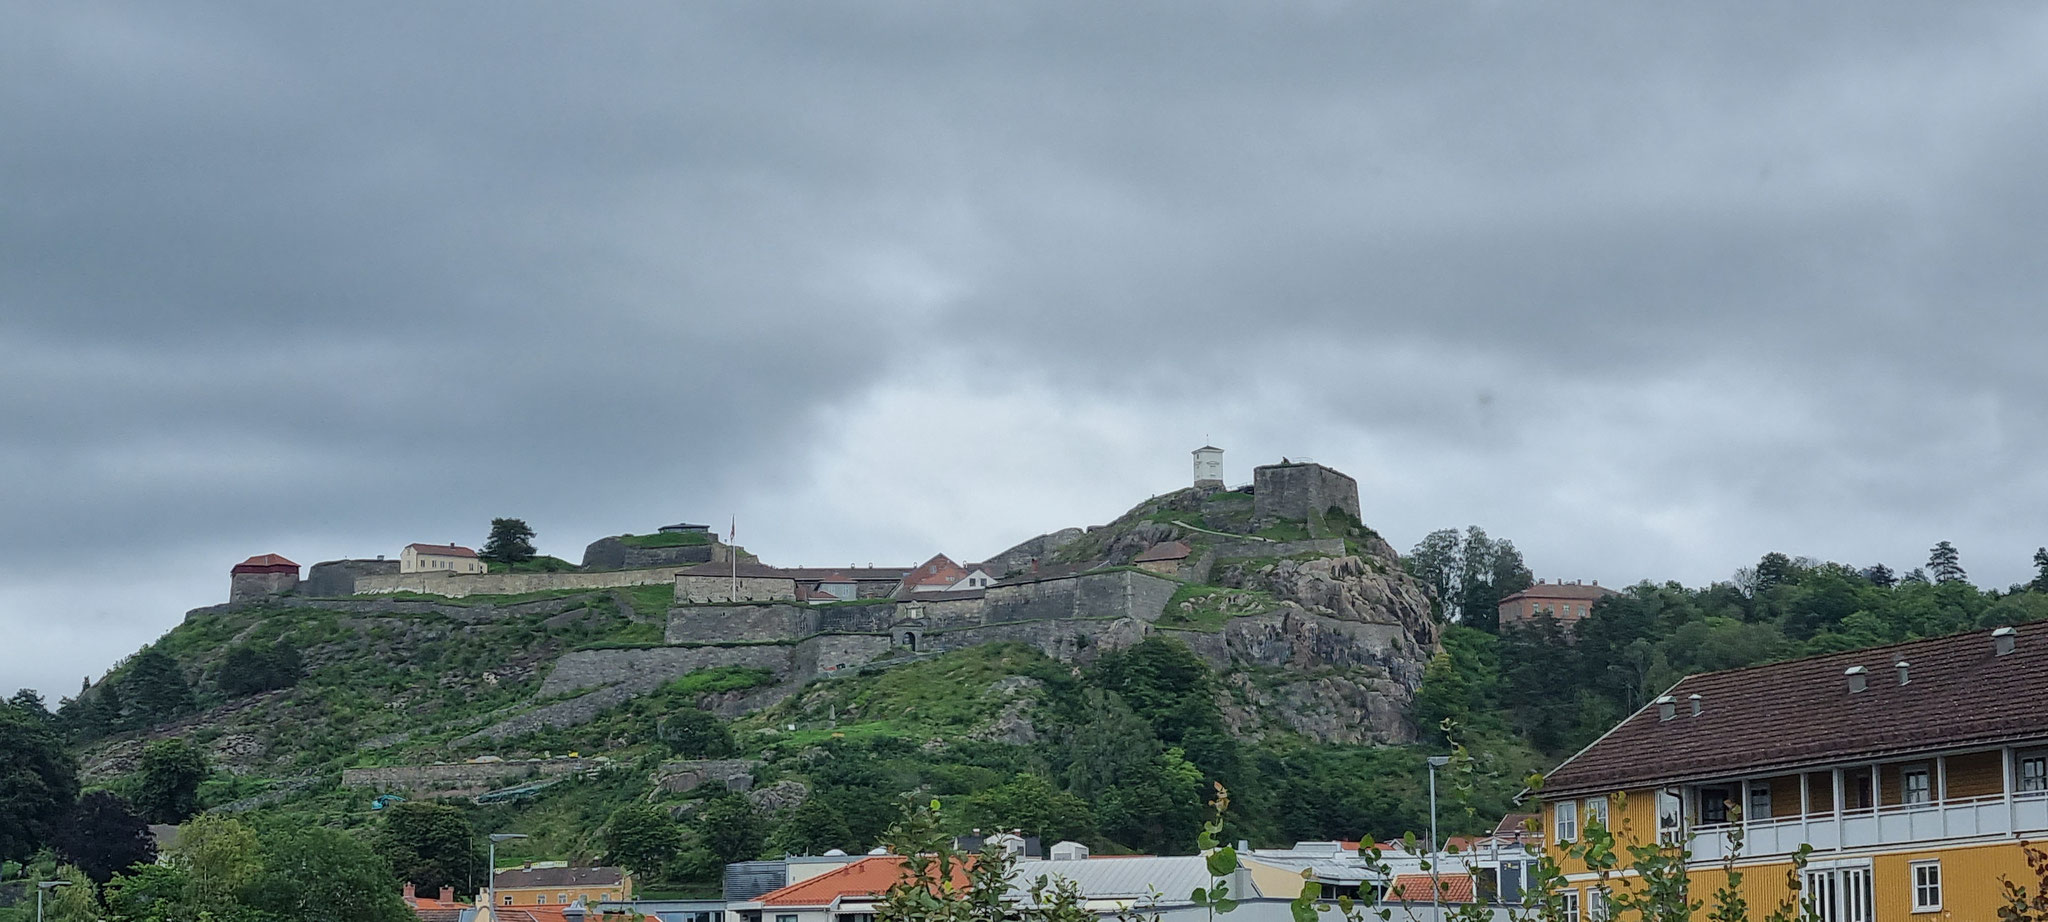 Auf dem Berg die Festung Fredriksten